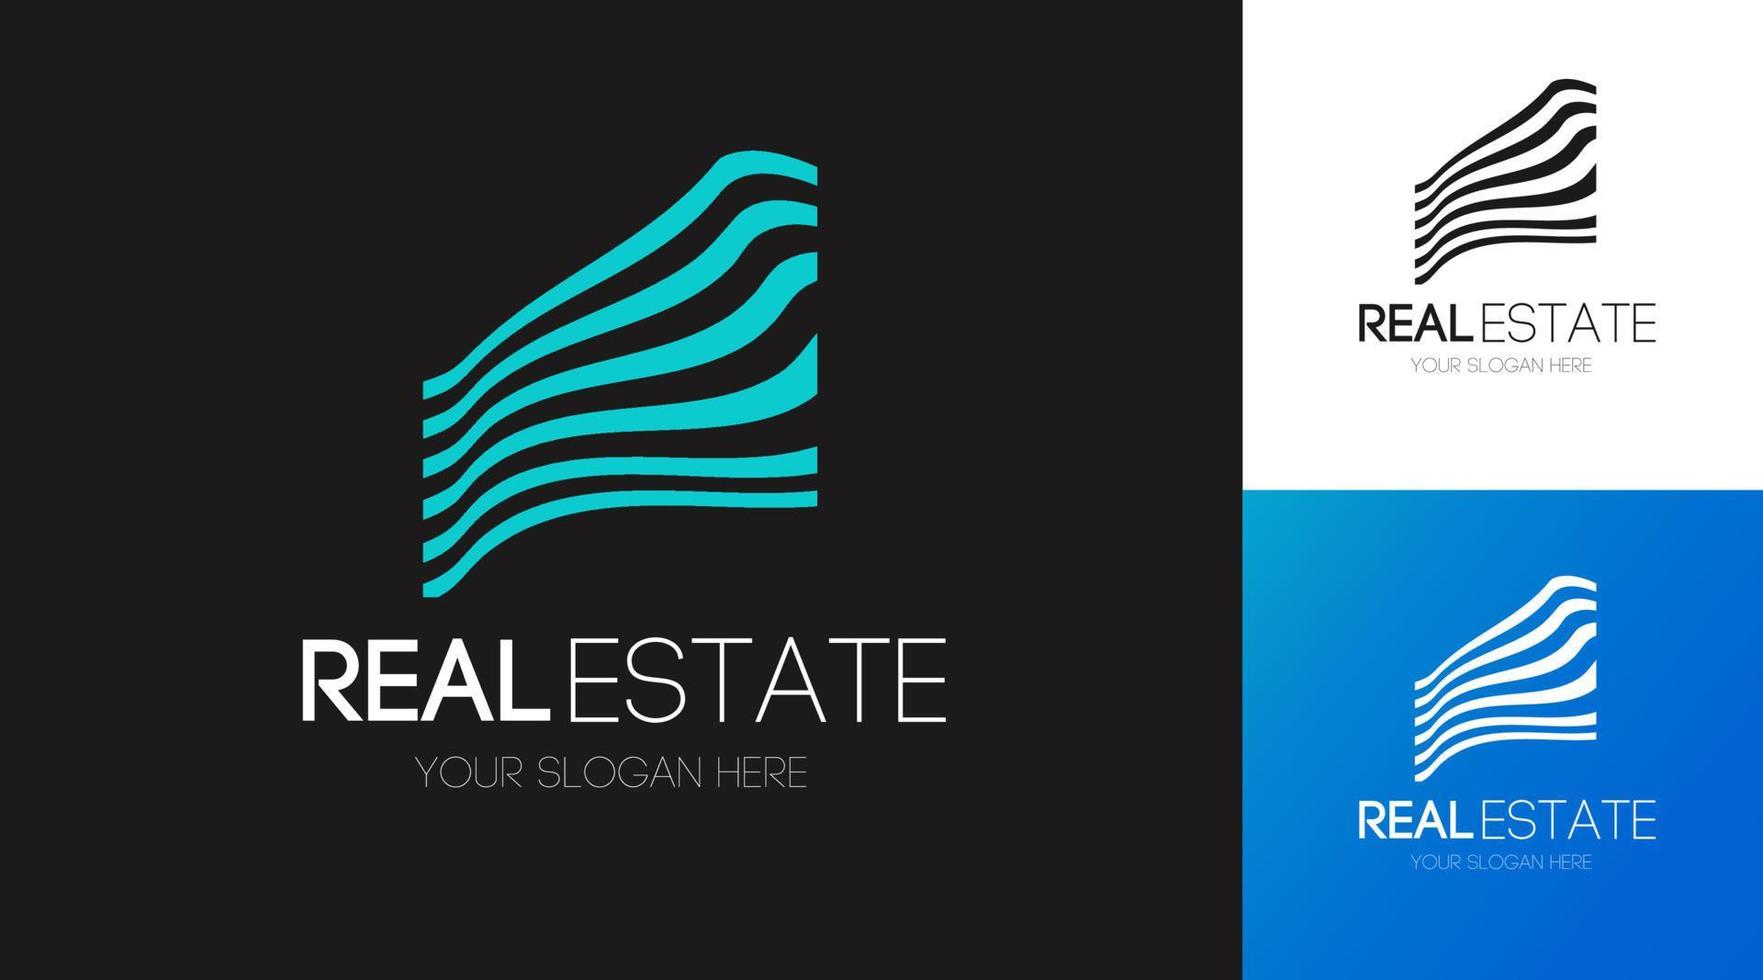 Real estate logo set vector